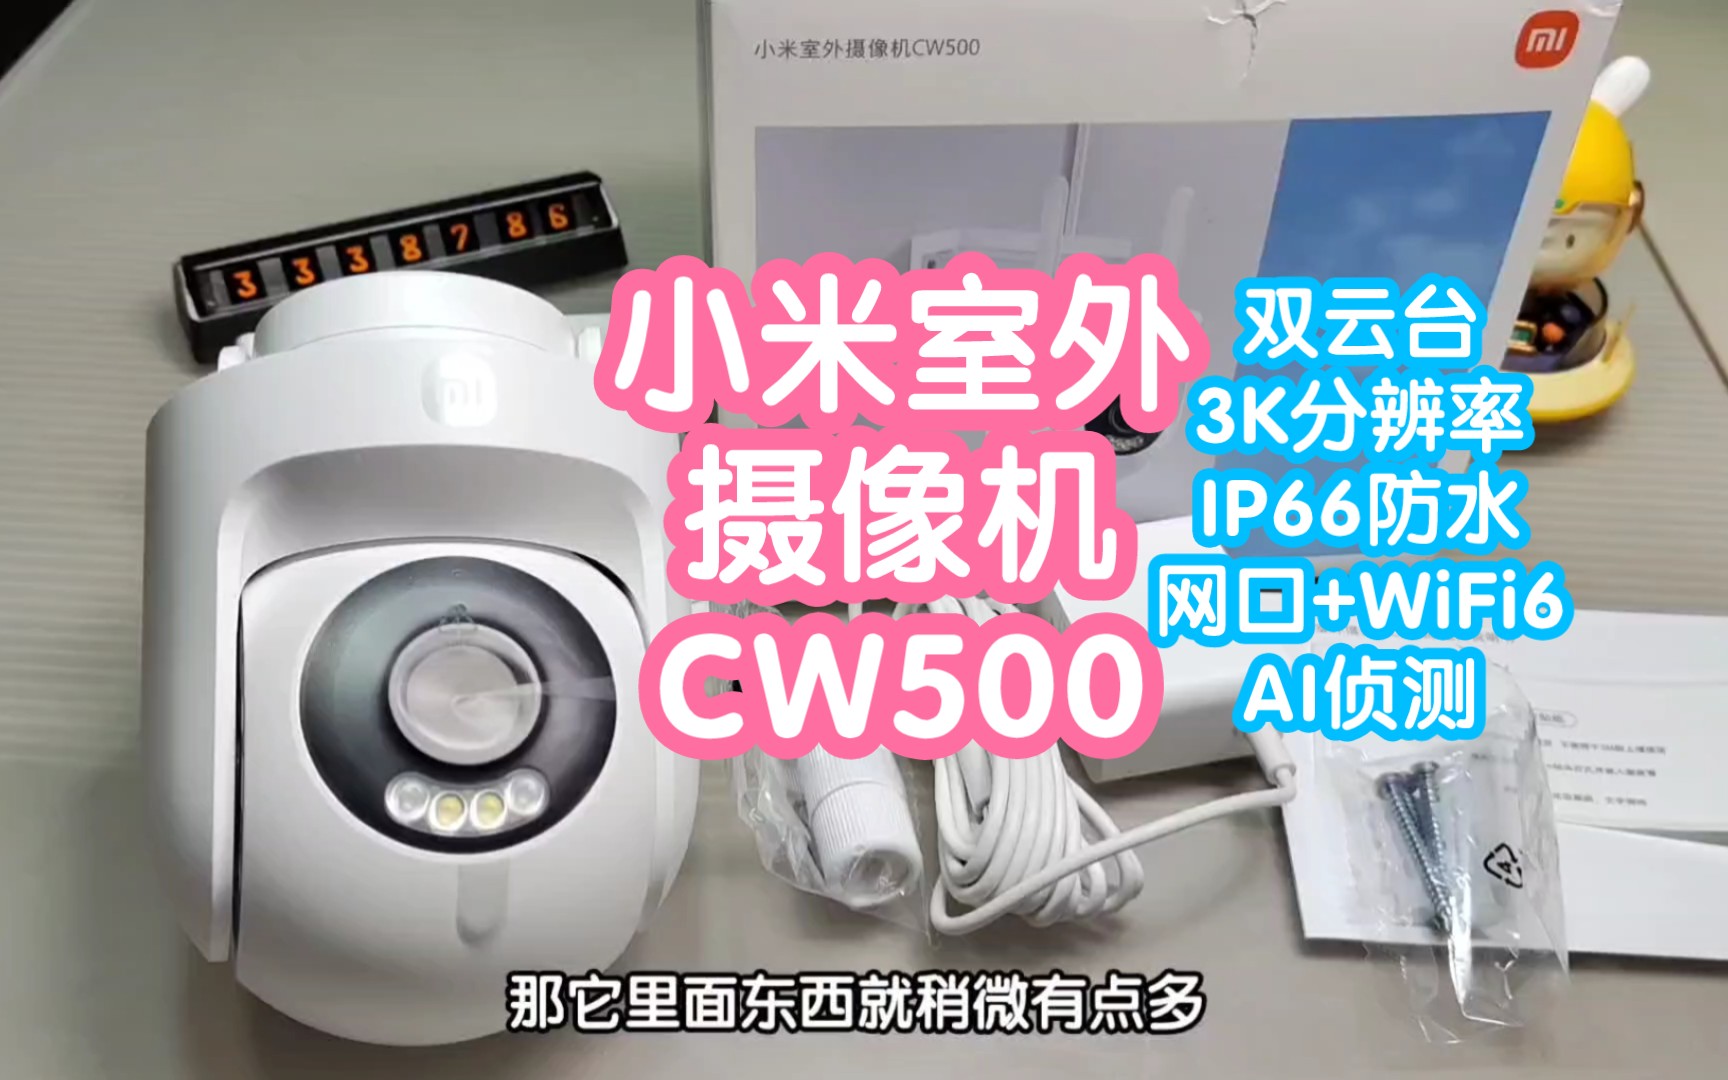 [预售抢跑]小米室外摄像机CW500。双云台，3K分辨率，小米首个WiFi6摄像机